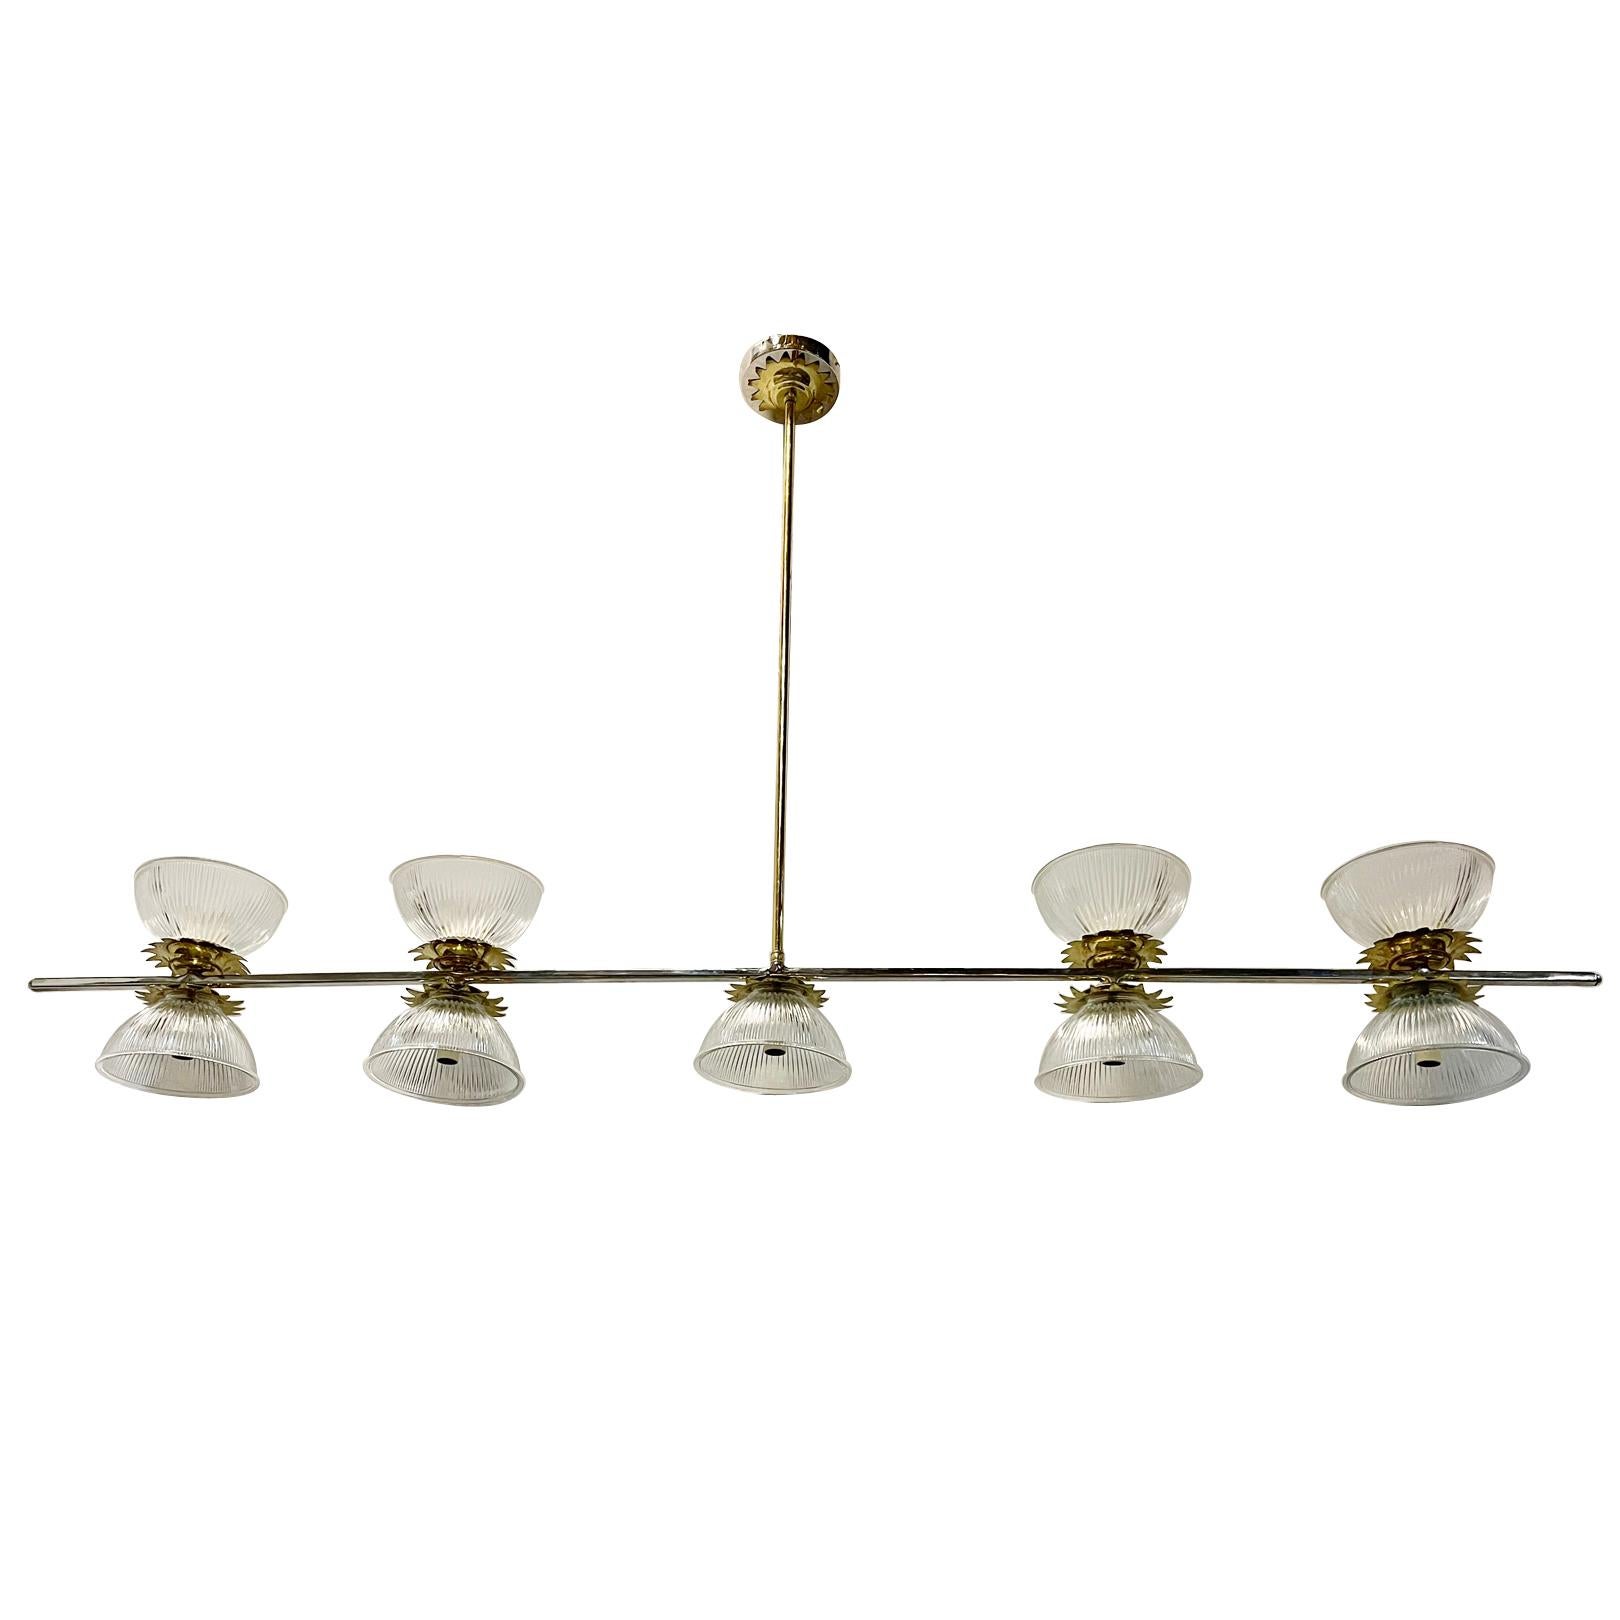 Un luminaire français des années 1960 avec 9 lampes candélabres, finition nickel et bronze.

Mesures :
Hauteur : 38.5